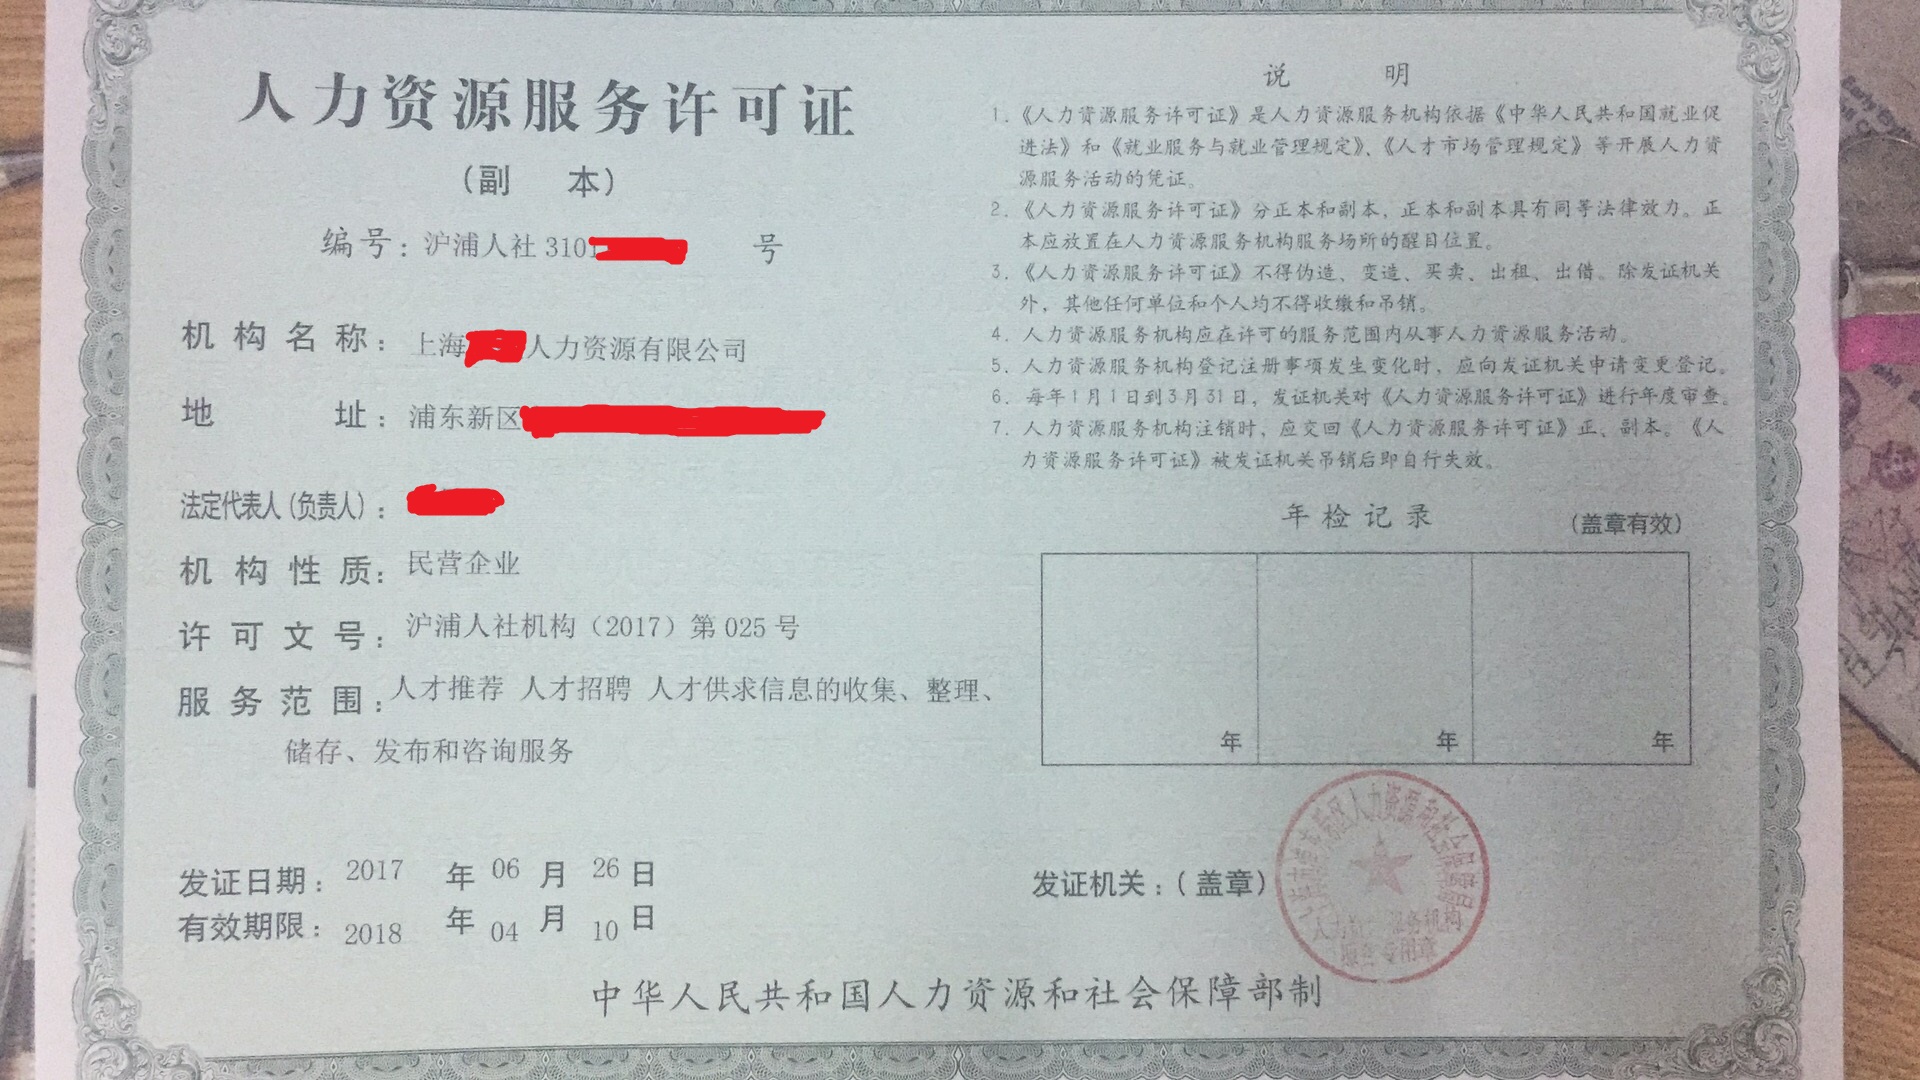 上海办理食品流通许可证 的要求及费用